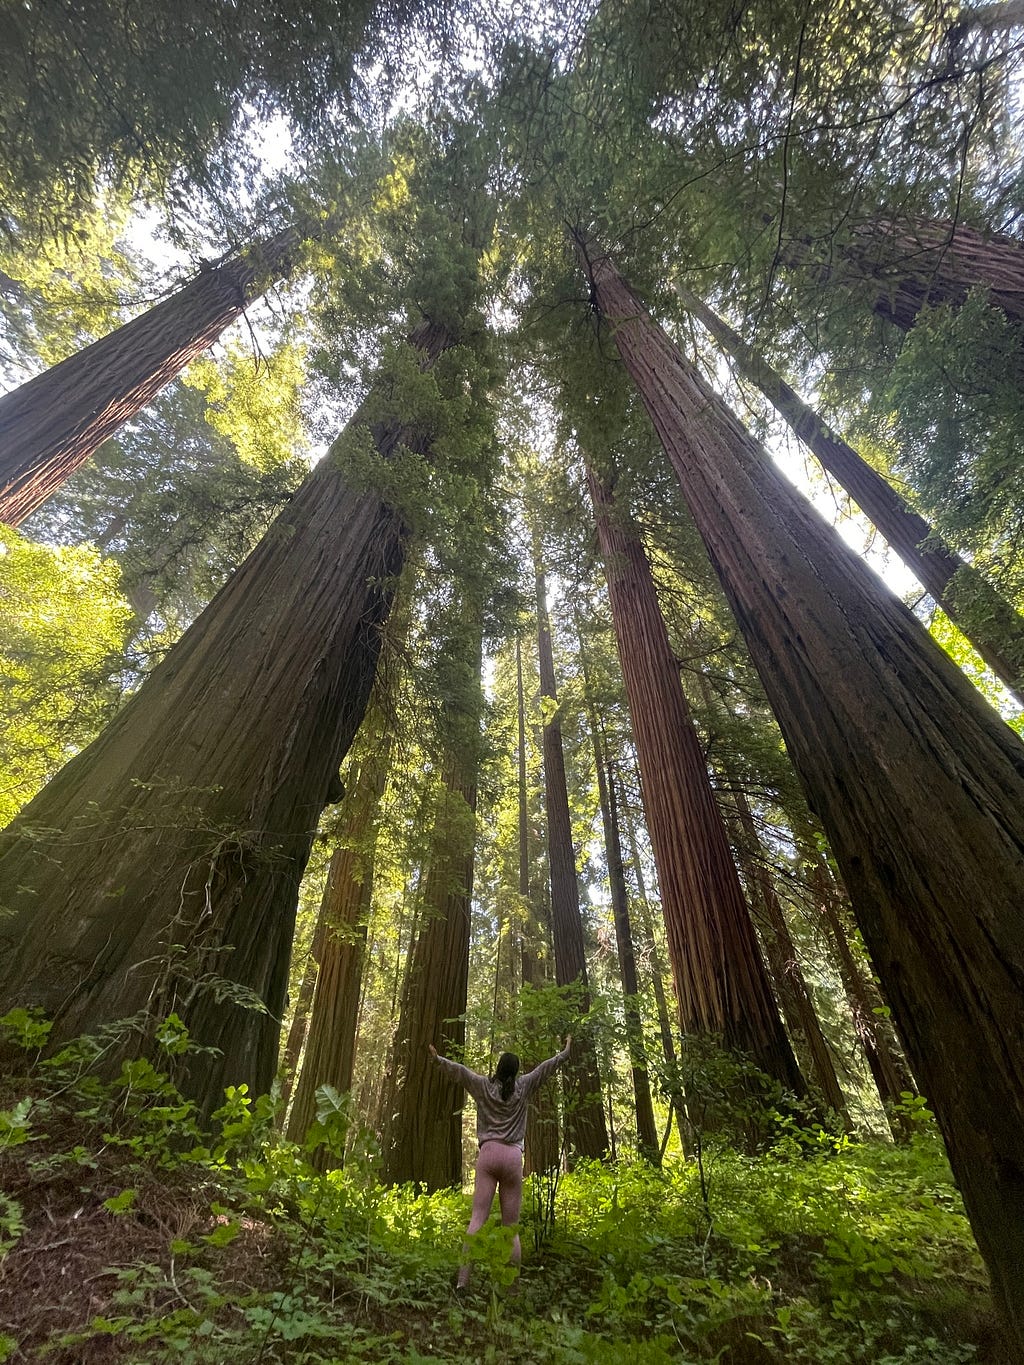 Never-ending redwood trees